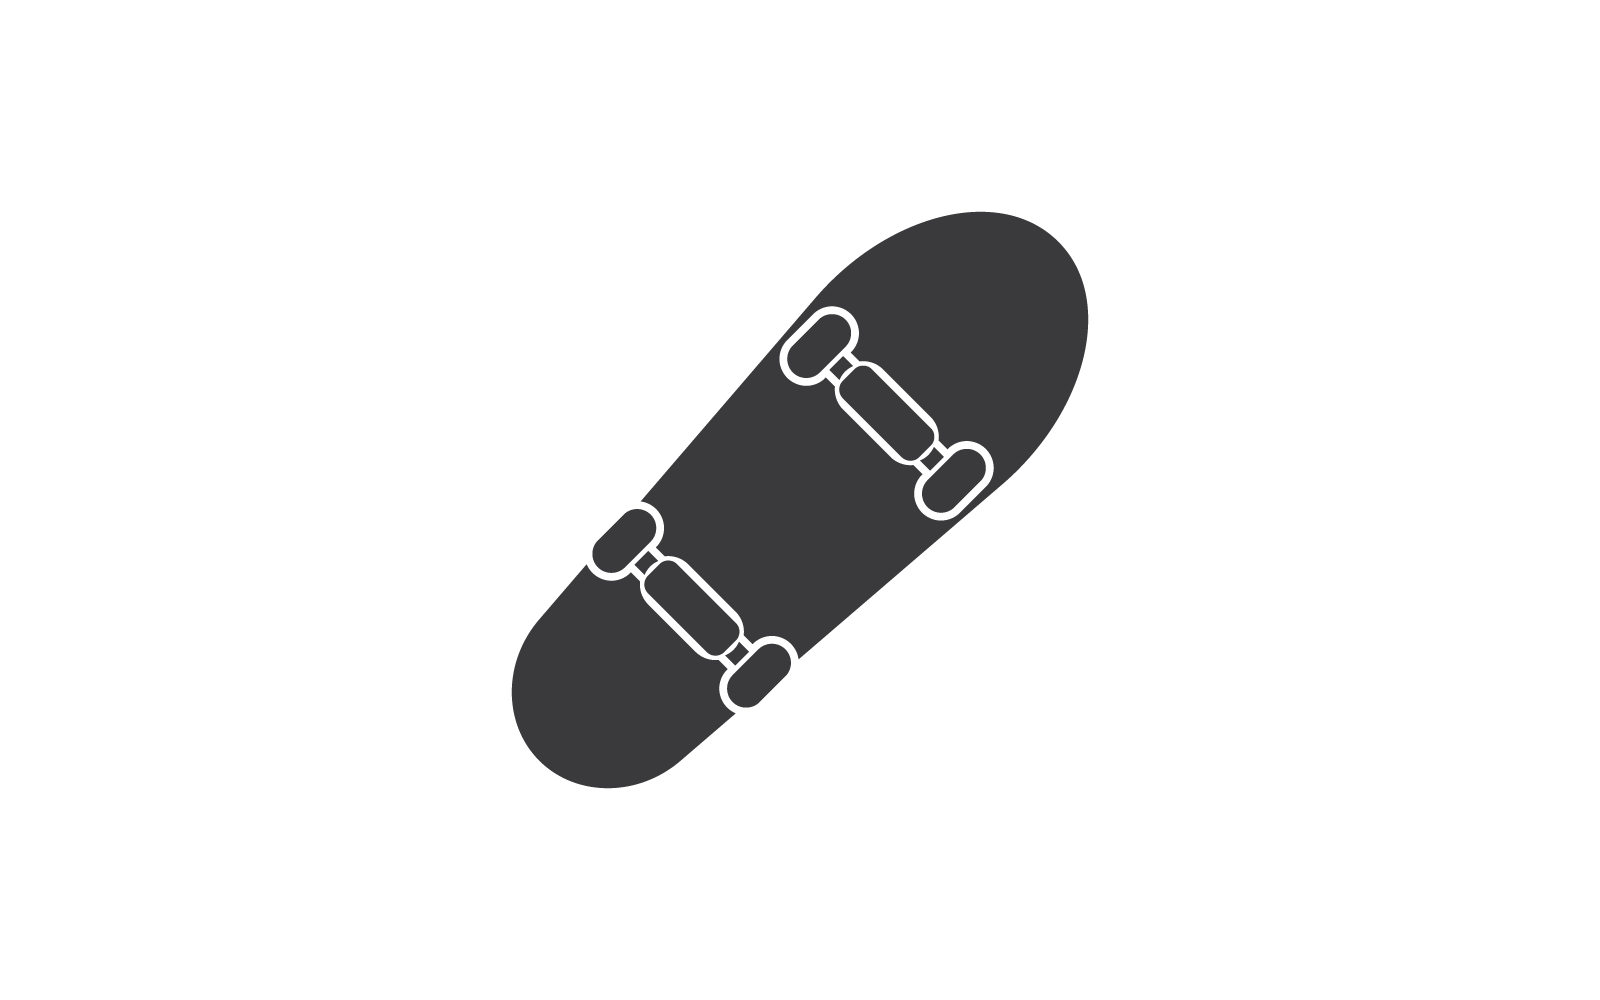 Icona di skateboard design piatto vettoriale isolato su sfondo bianco